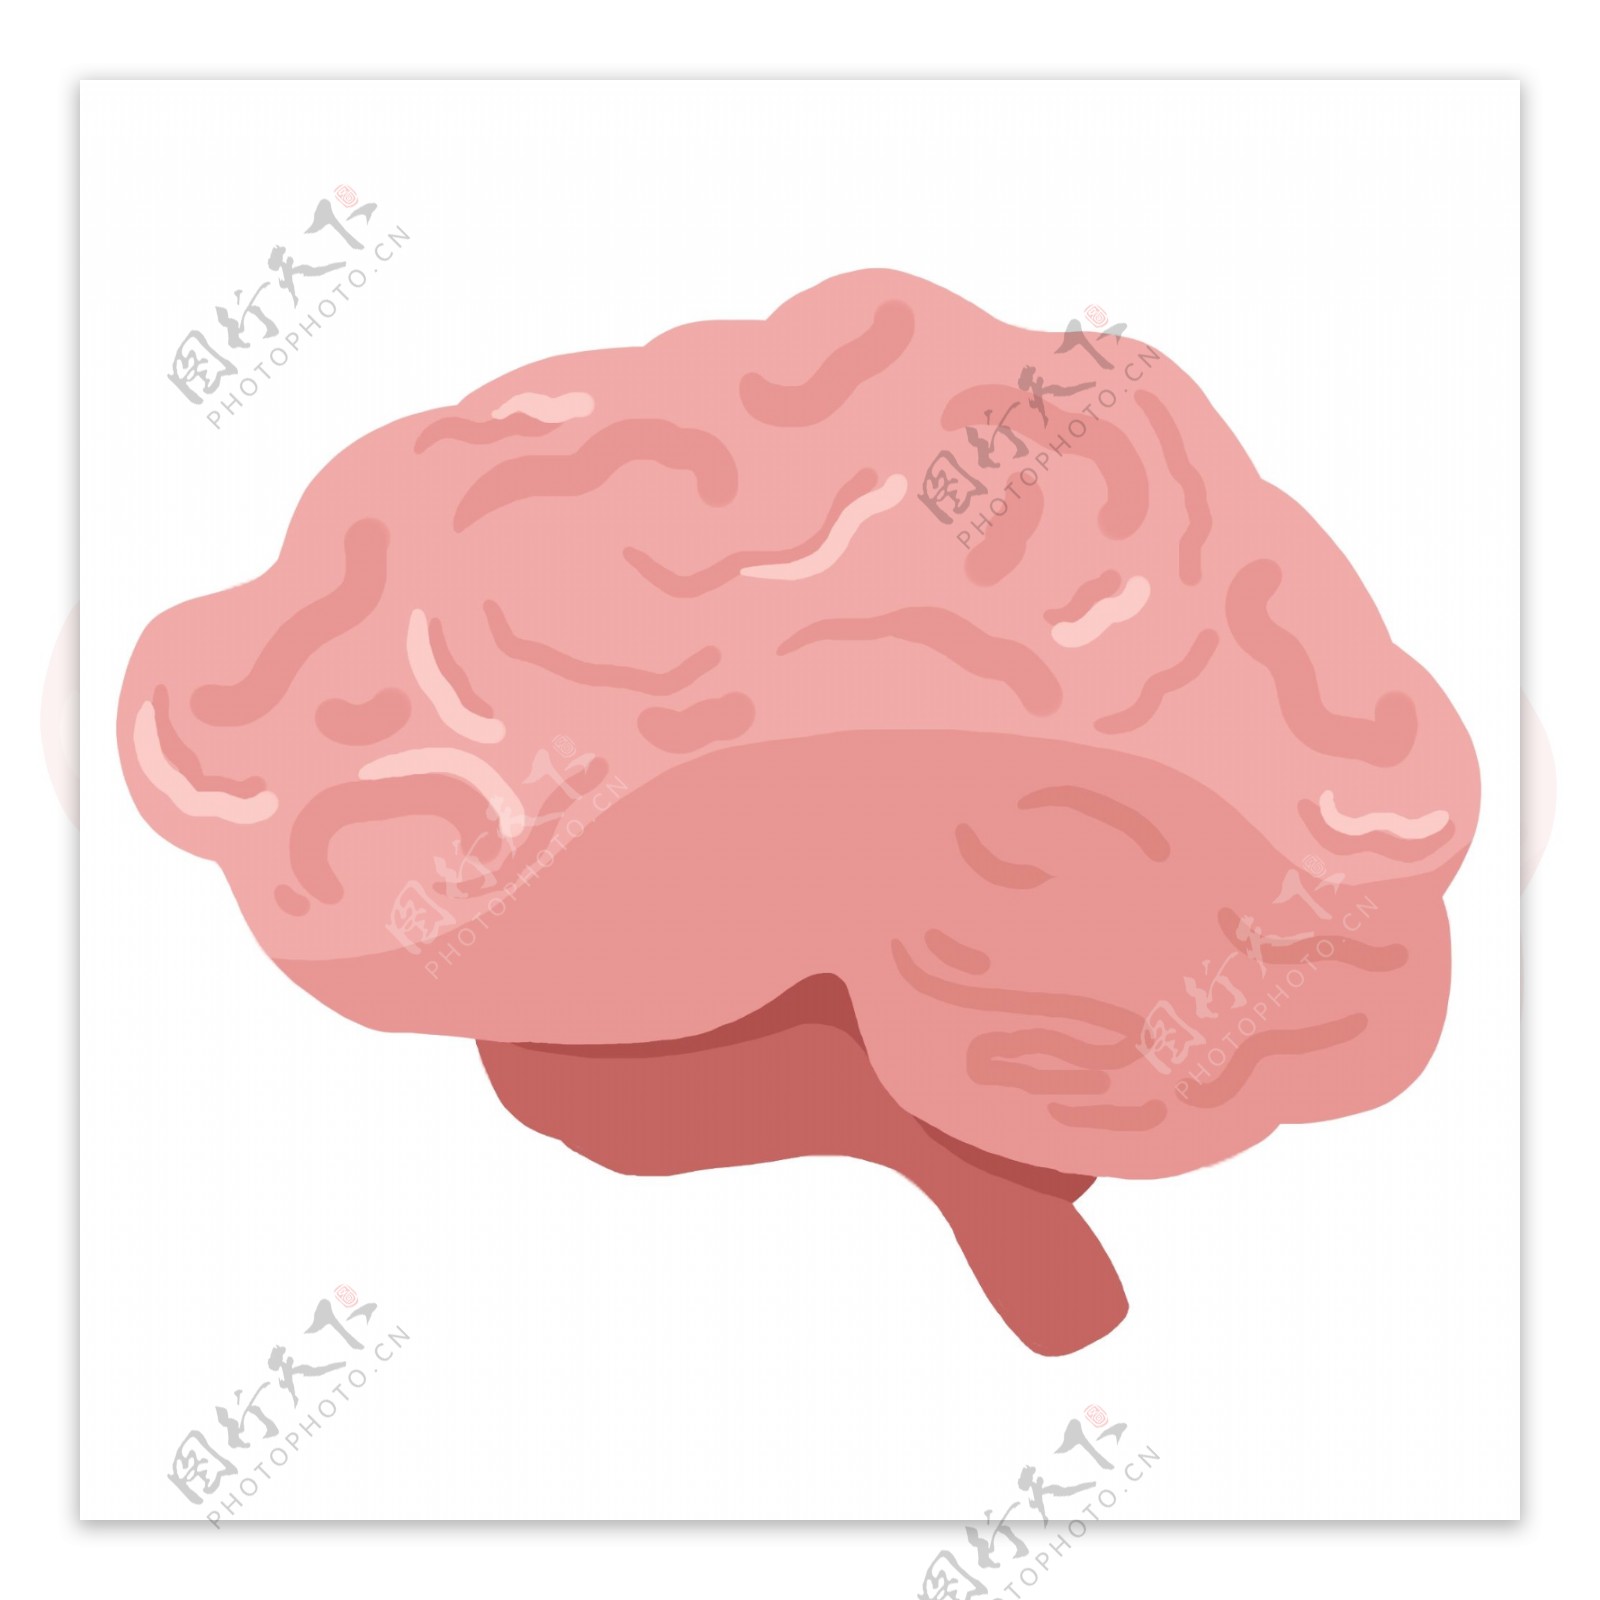 人体器官大脑插画